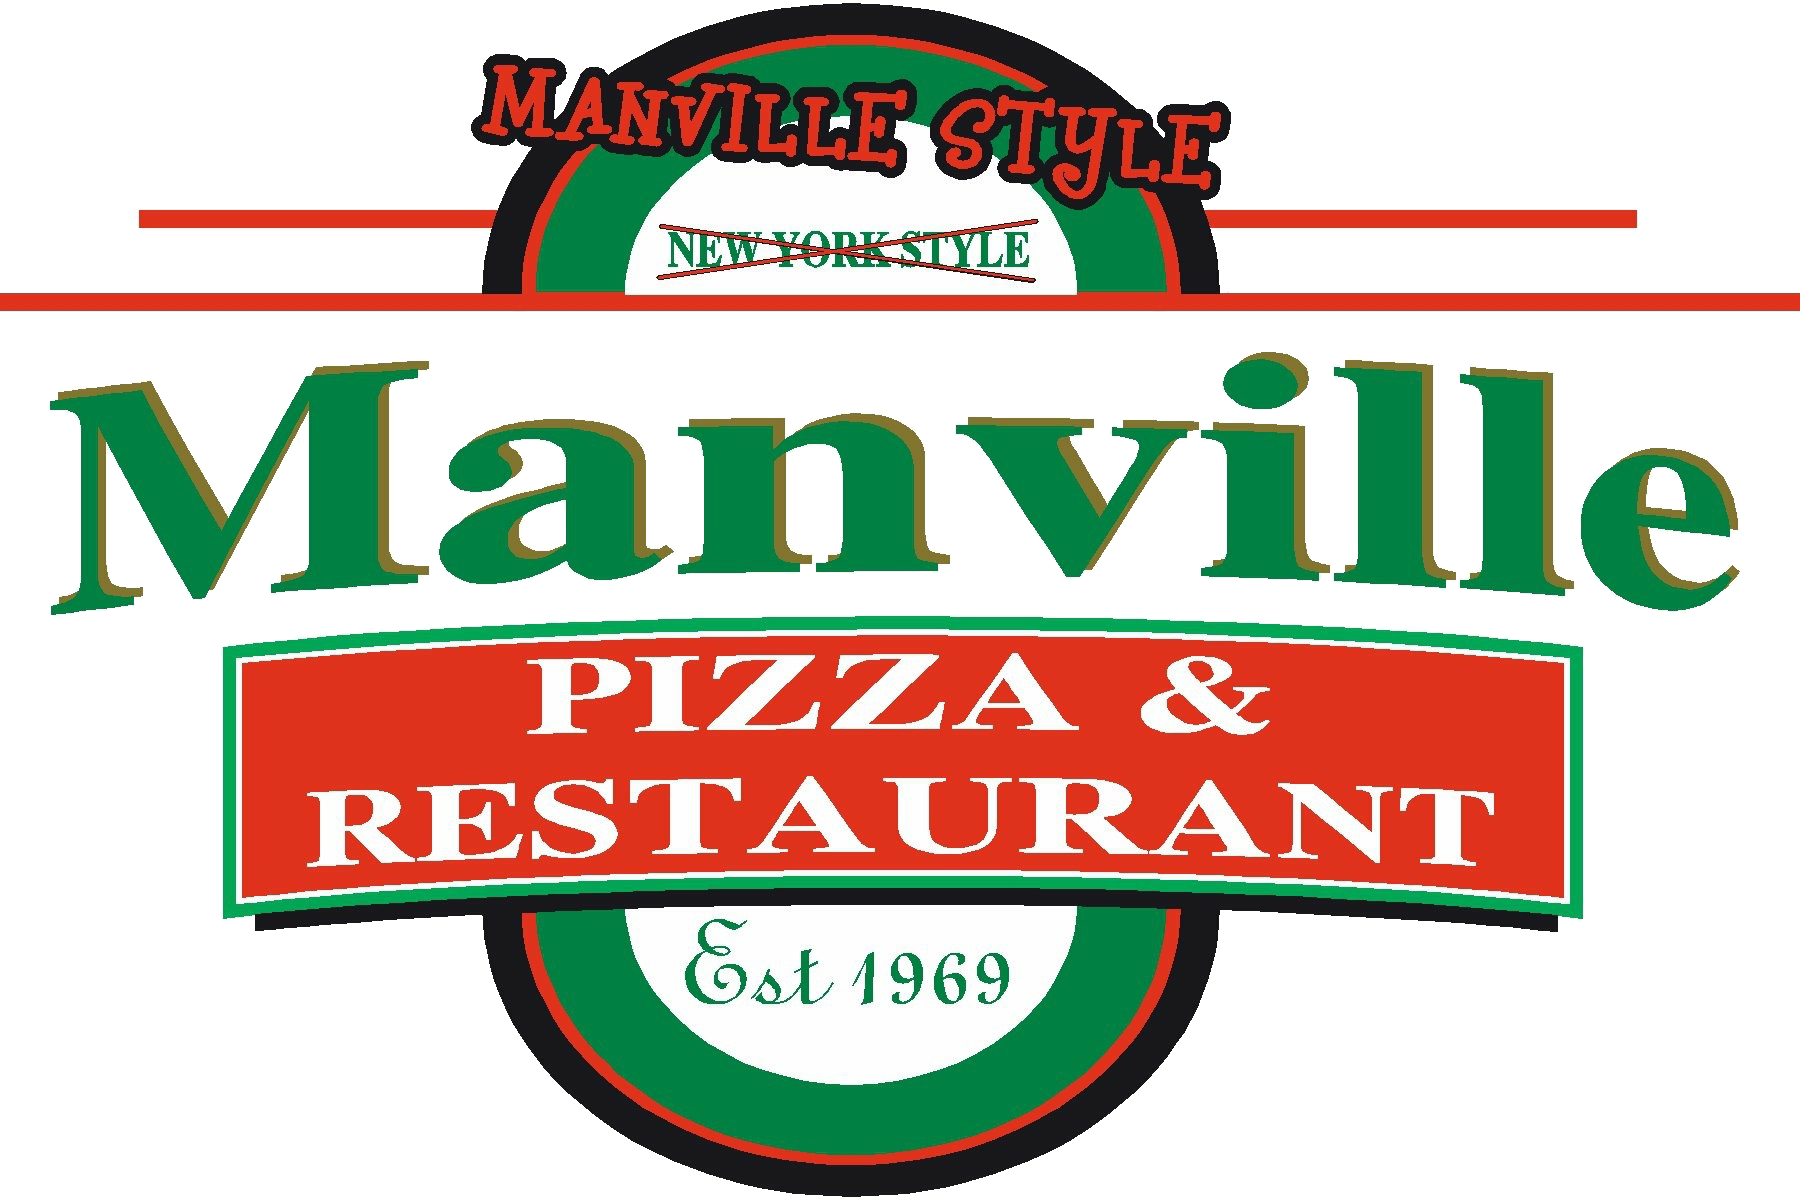 ManvillePizza.png